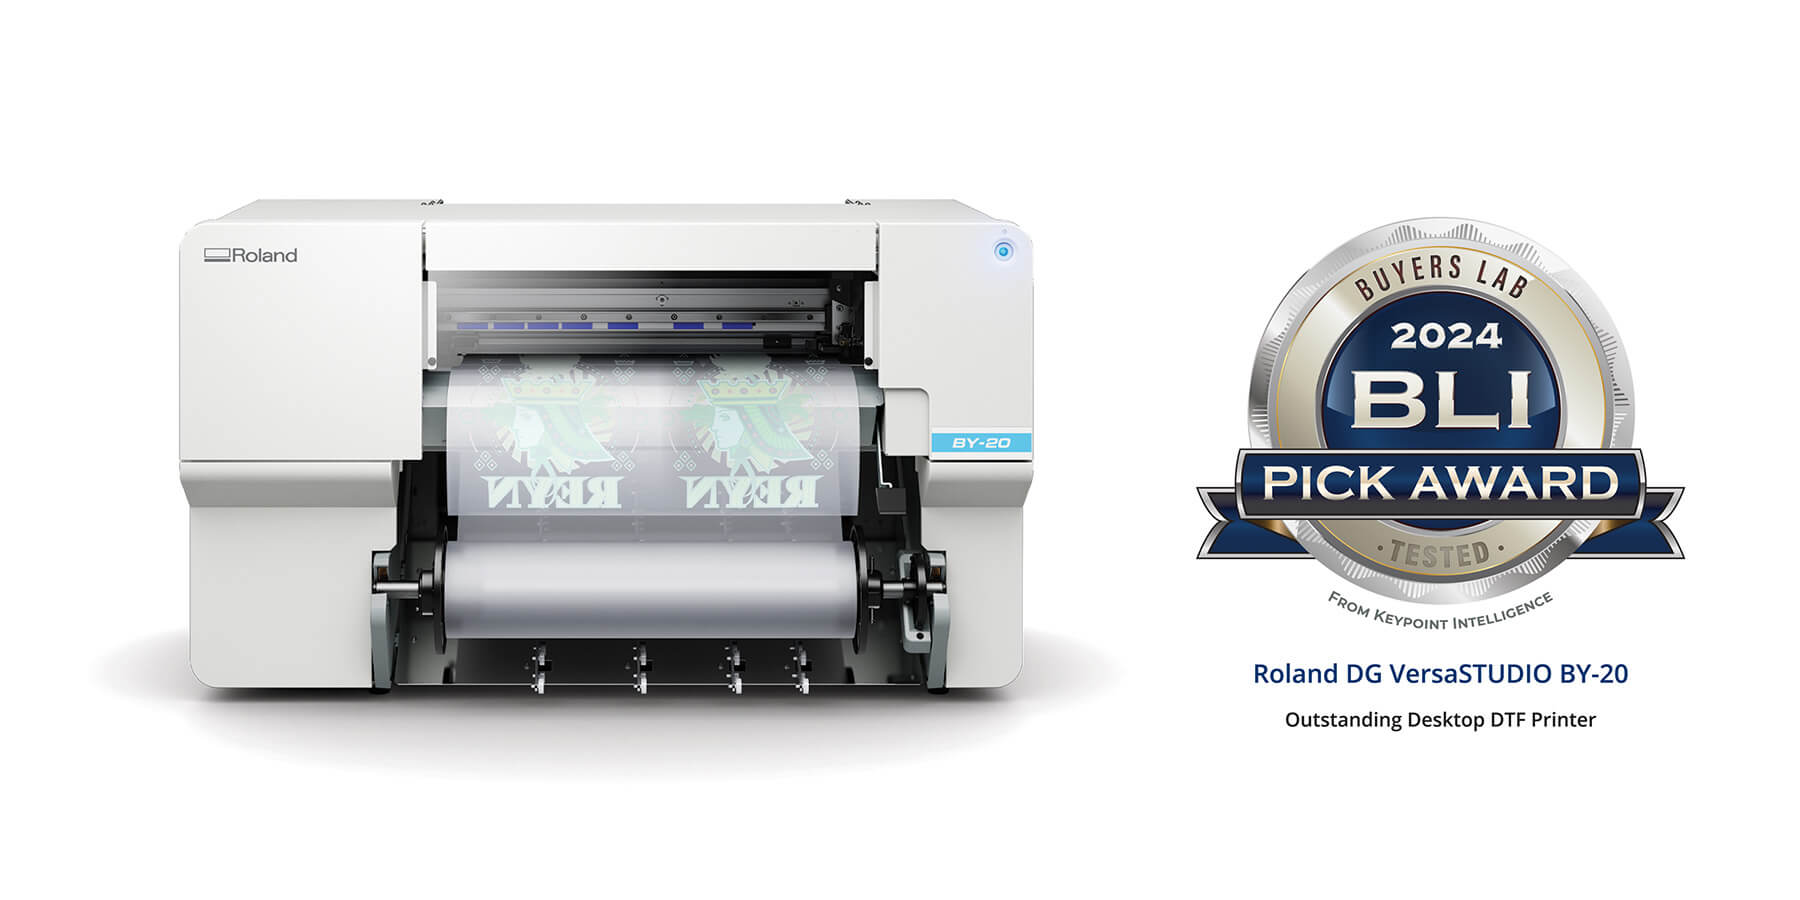 Imagen de la nueva impresora directo-a-película (DTF) VersaSTUDIO® BY-20 de Roland DG con el logotipo del Premio BLI Pick 2024 